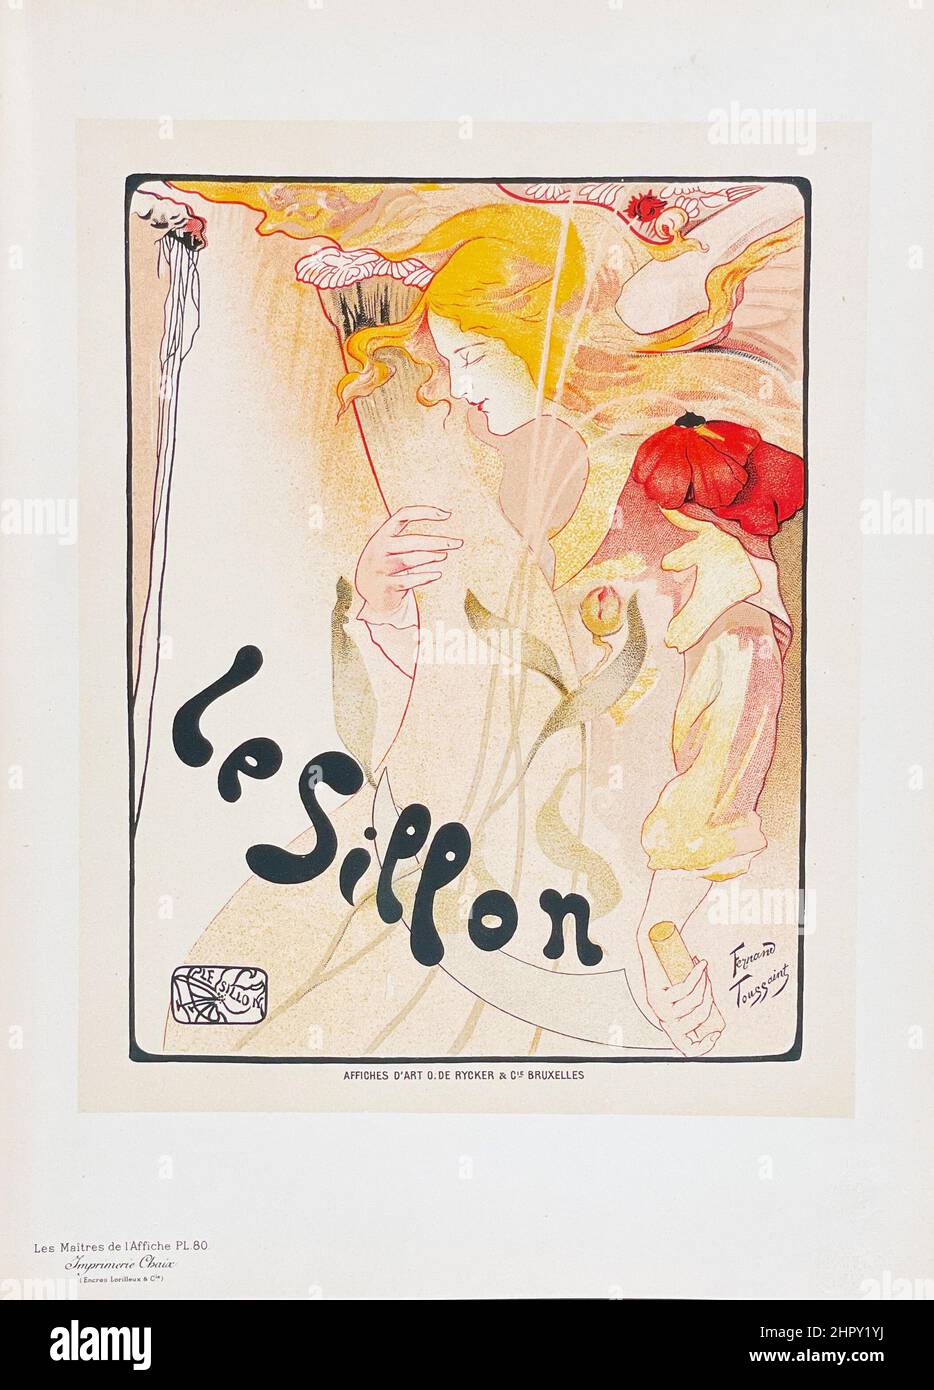 Les Maitres de l'Affiche', Plate 80: Le Sillon - Artist: Fernand Toussaint, 1897. Stock Photo